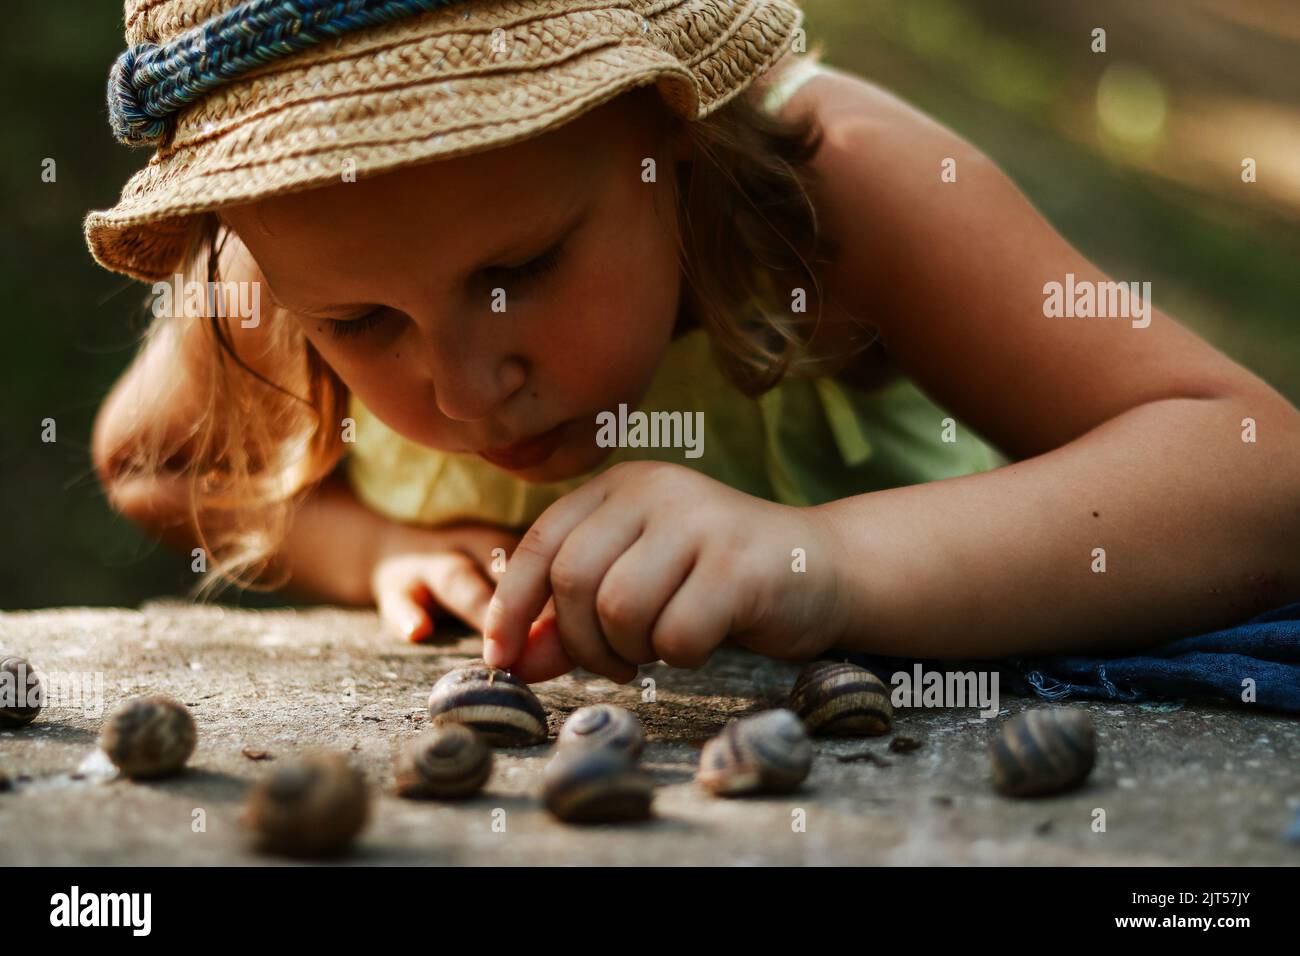 Moments d'enfance. L'enfant tient des escargots dans ses mains. Copier l'espace. Jeux en plein air pour enfants. Banque D'Images